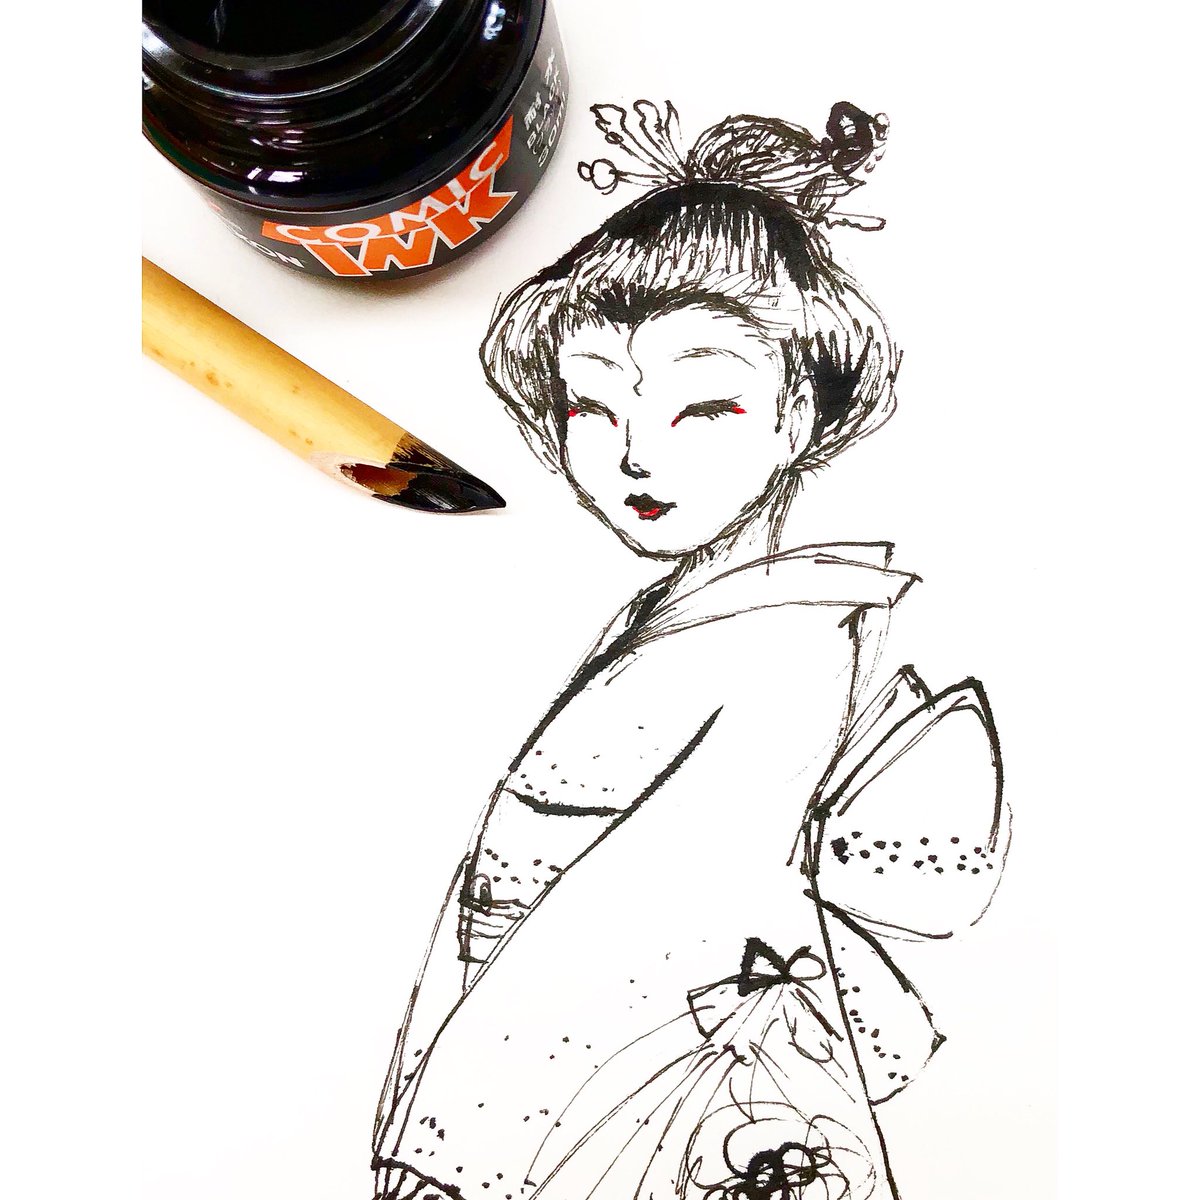 Chinae בטוויטר カワチで買った竹ペンで 着物の女性を描きました イラスト Illustration 和風 着物 オリジナルイラスト 竹ペン